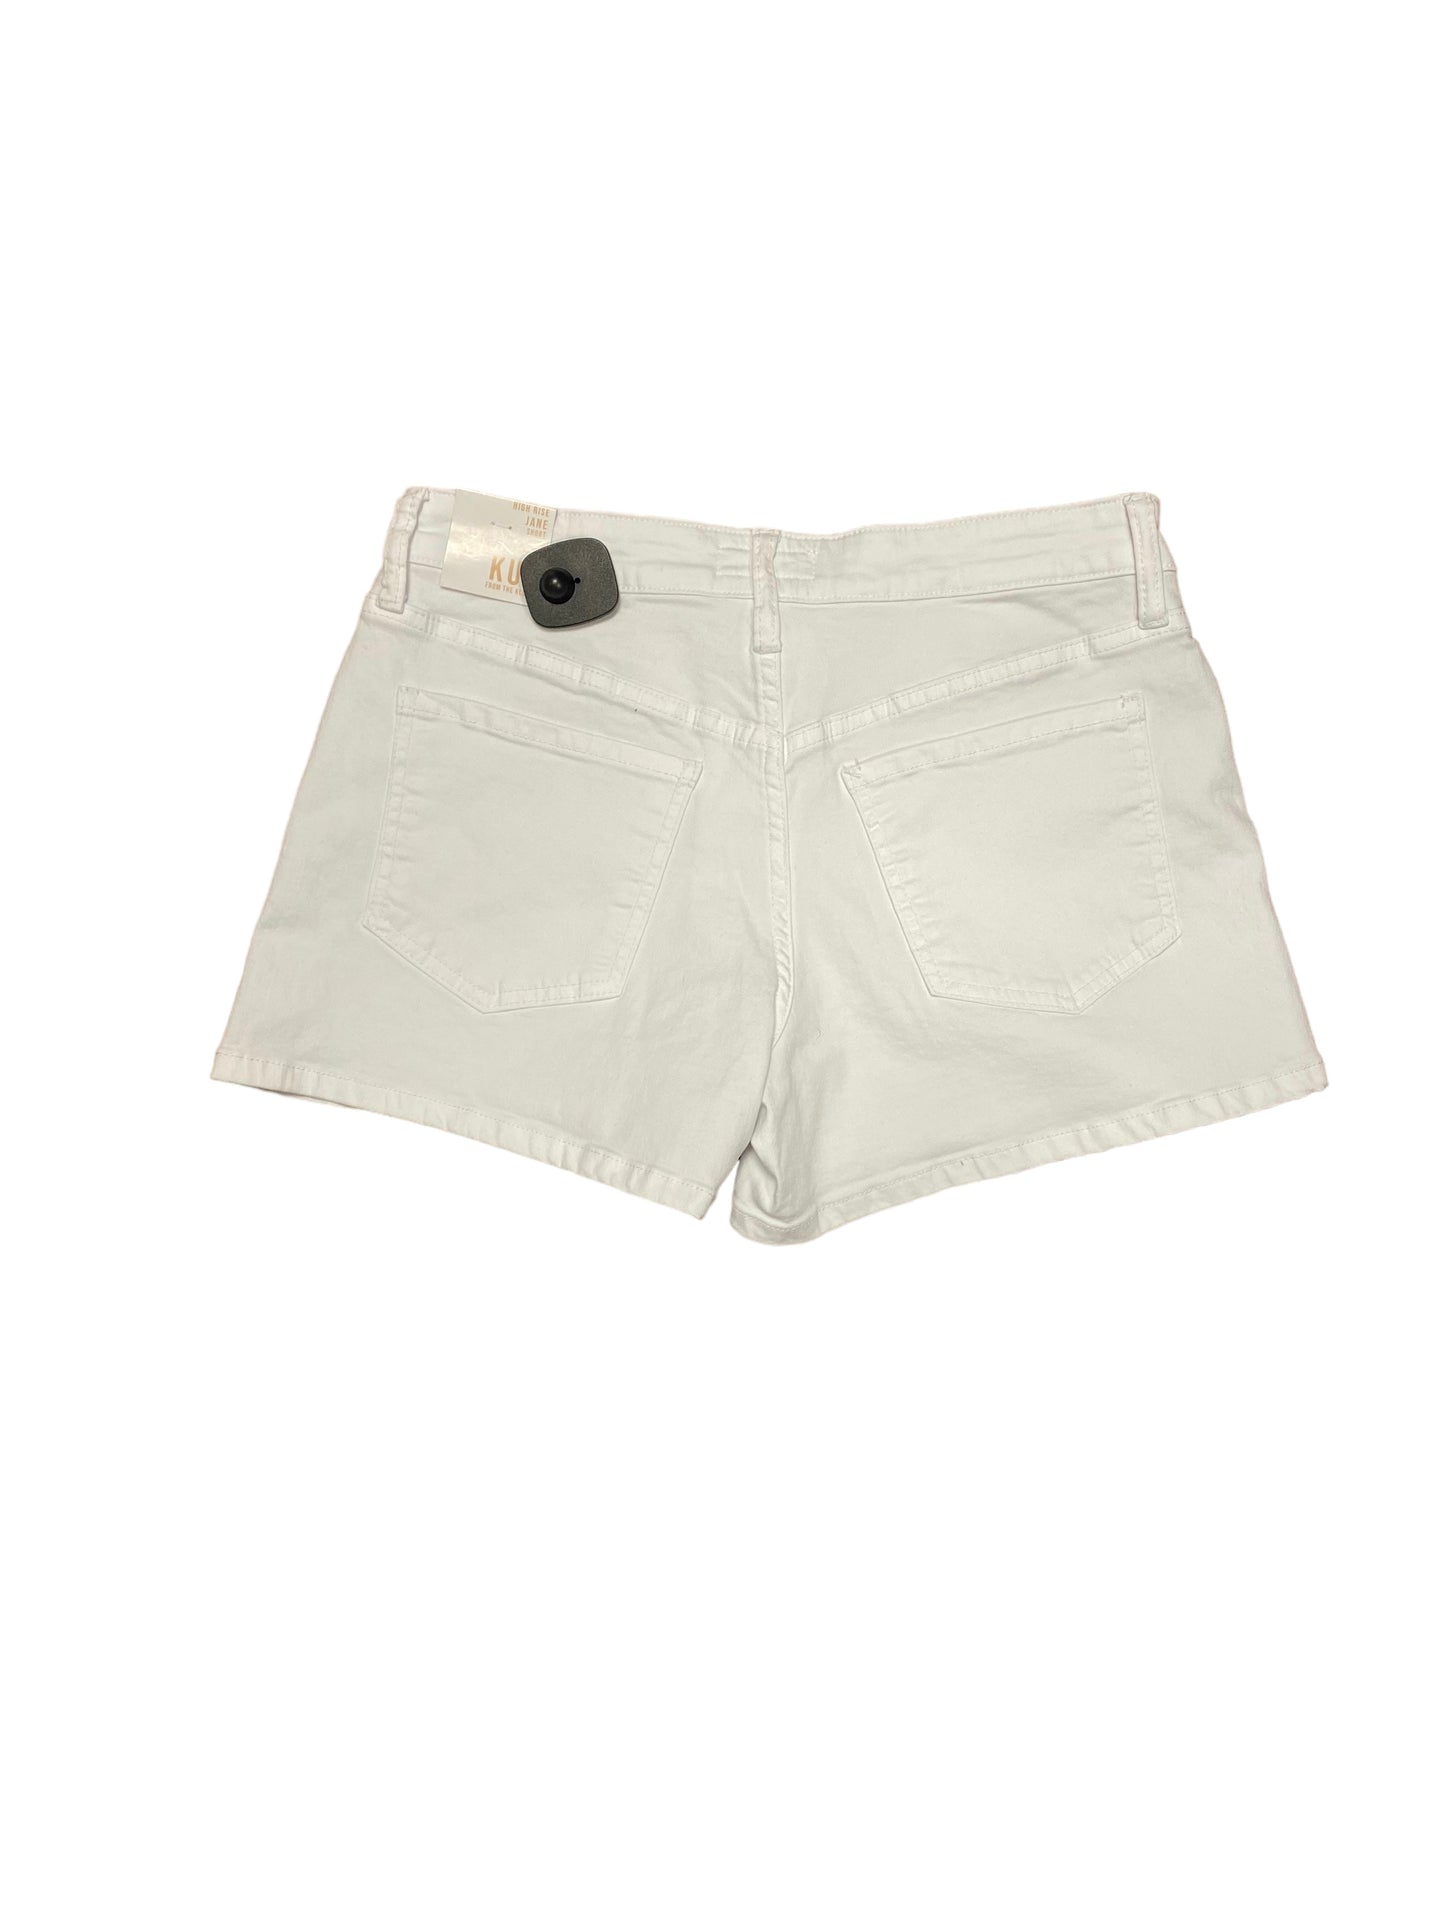 White Shorts Kut, Size 6